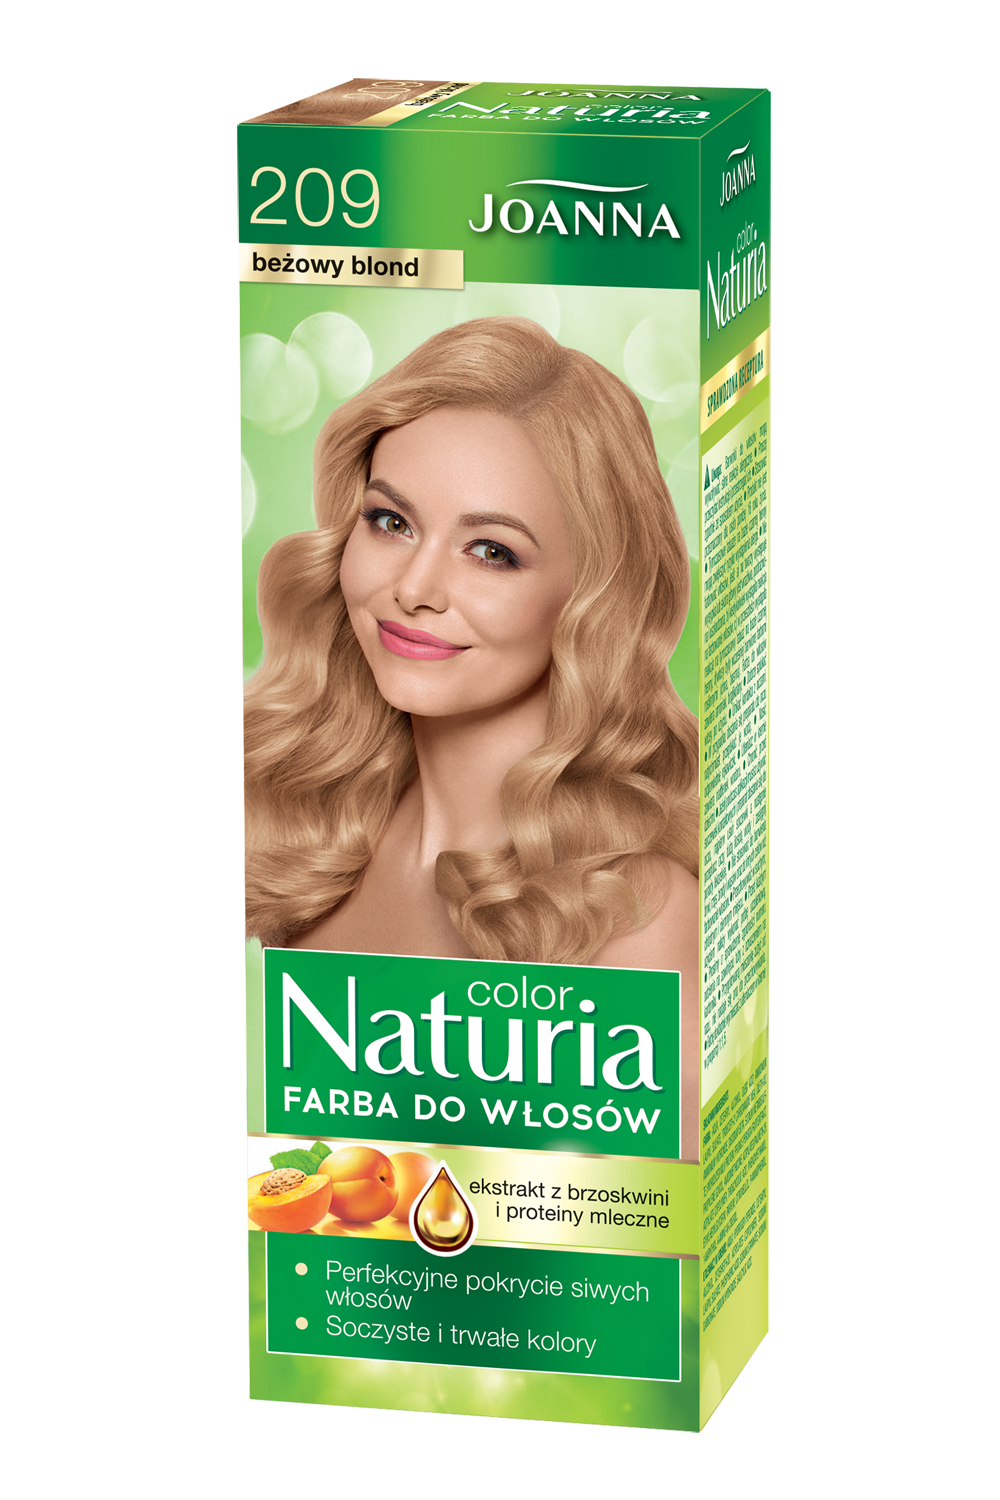 Farba do włosów Joanna Naturia Color w odcieniu nr 209 beżowy blond